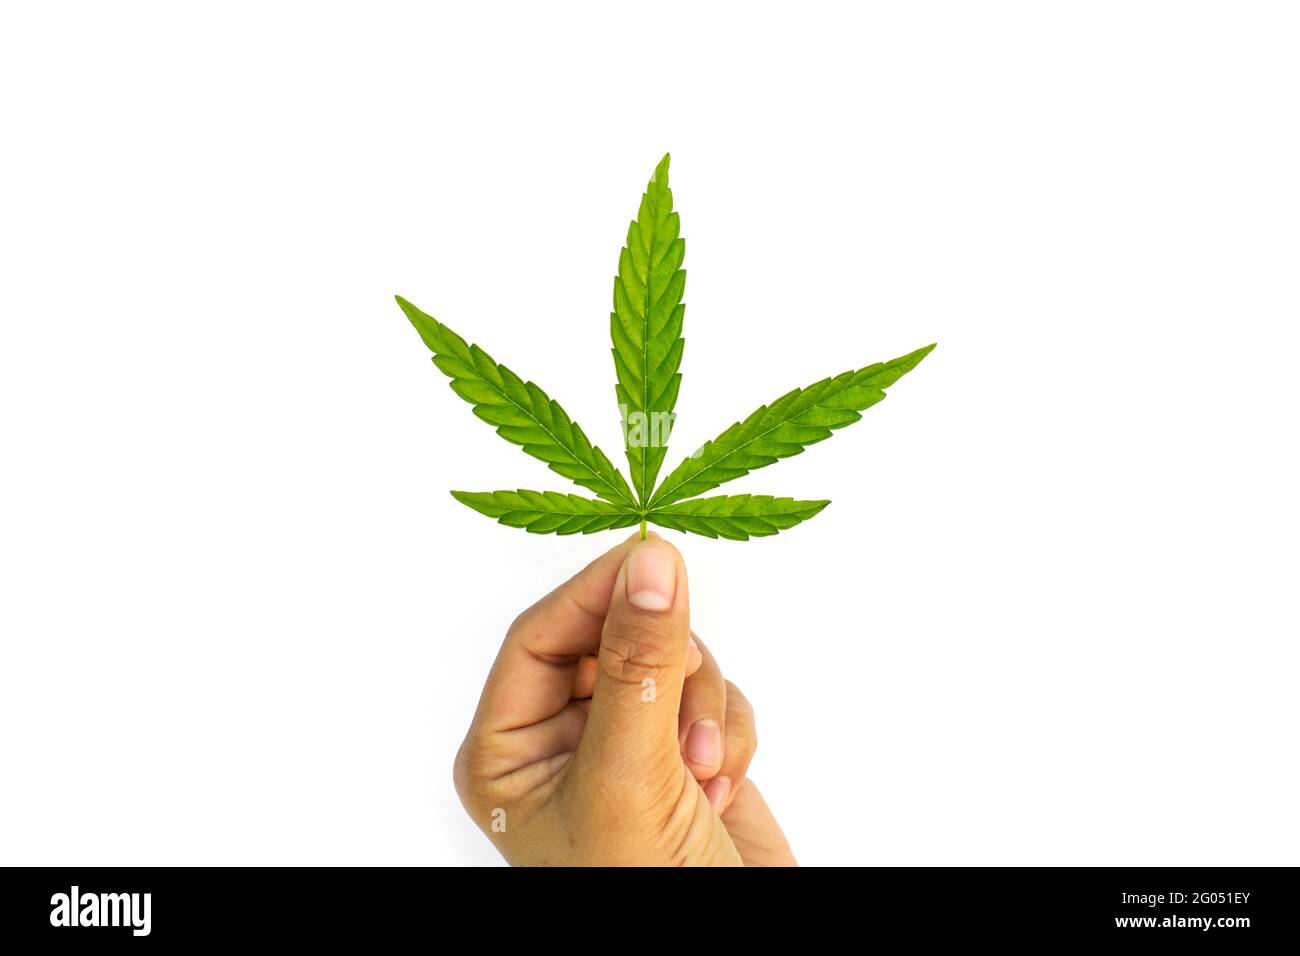 Les feuilles vertes de cannabis sont à portée de main sur fond blanc, concept de l'utilisation du cannabis pour des prestations médicales. Banque D'Images